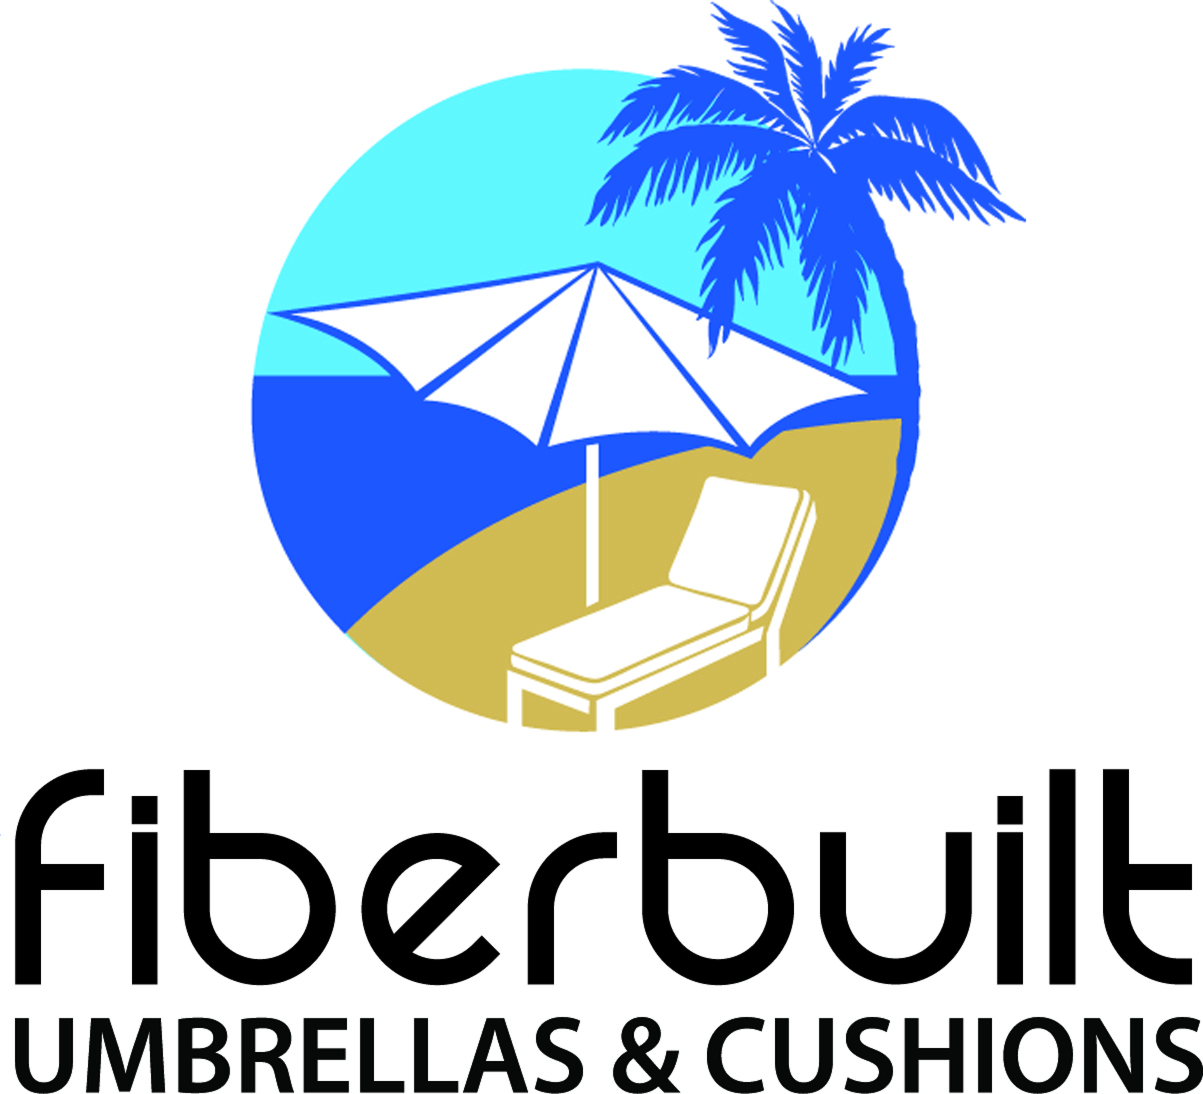 FiberBuilt Umbrellas & Cushions